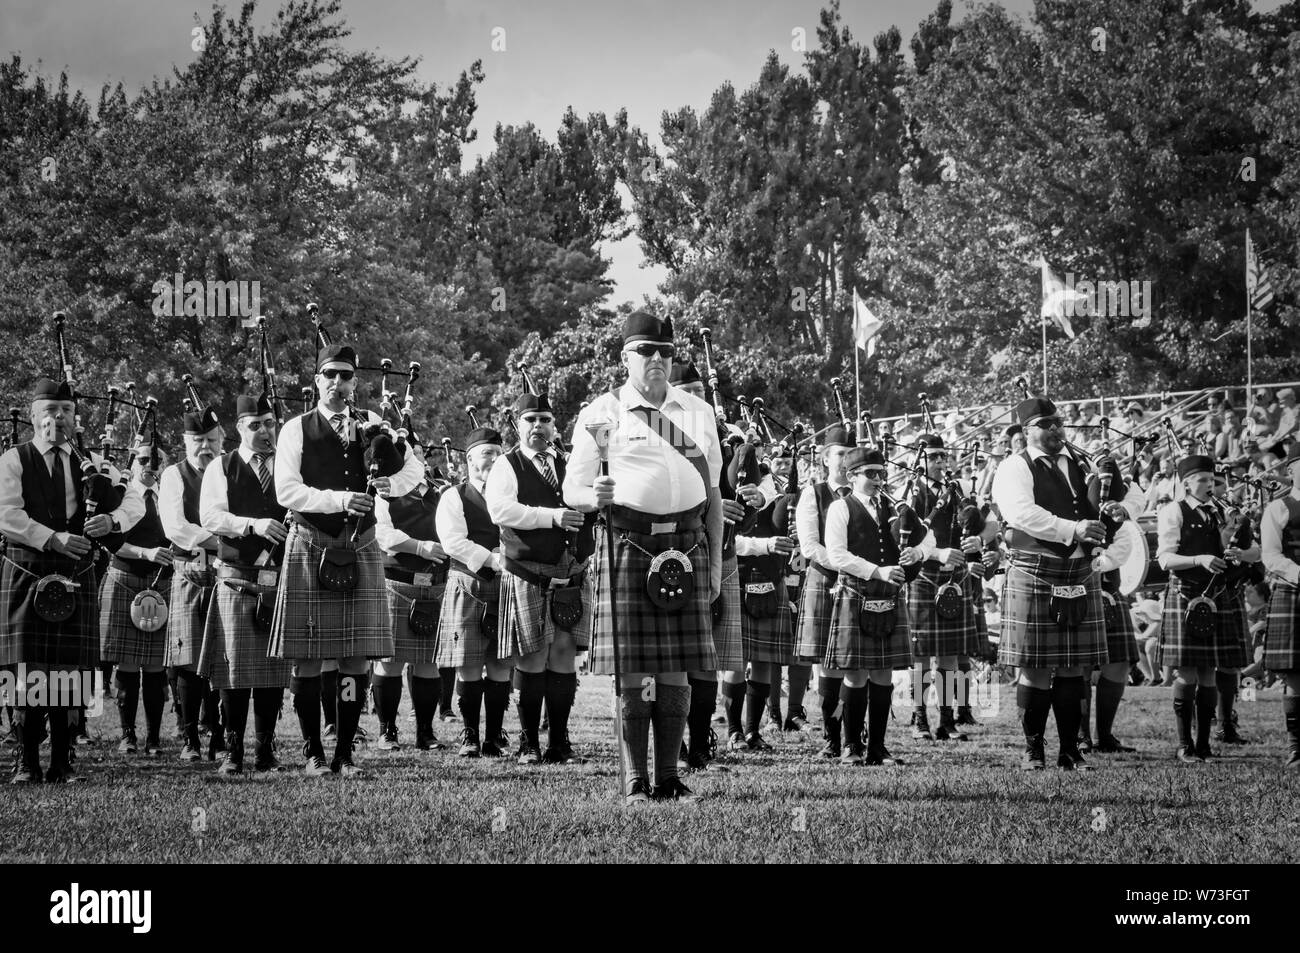 Fergus, Ontario, Kanada - 08 11 2018: Über 20 Pipe Bands in der Pipe Band Contest von Pipers und Pipe Band Gesellschaft von Ontario statt paricipated während Stockfoto